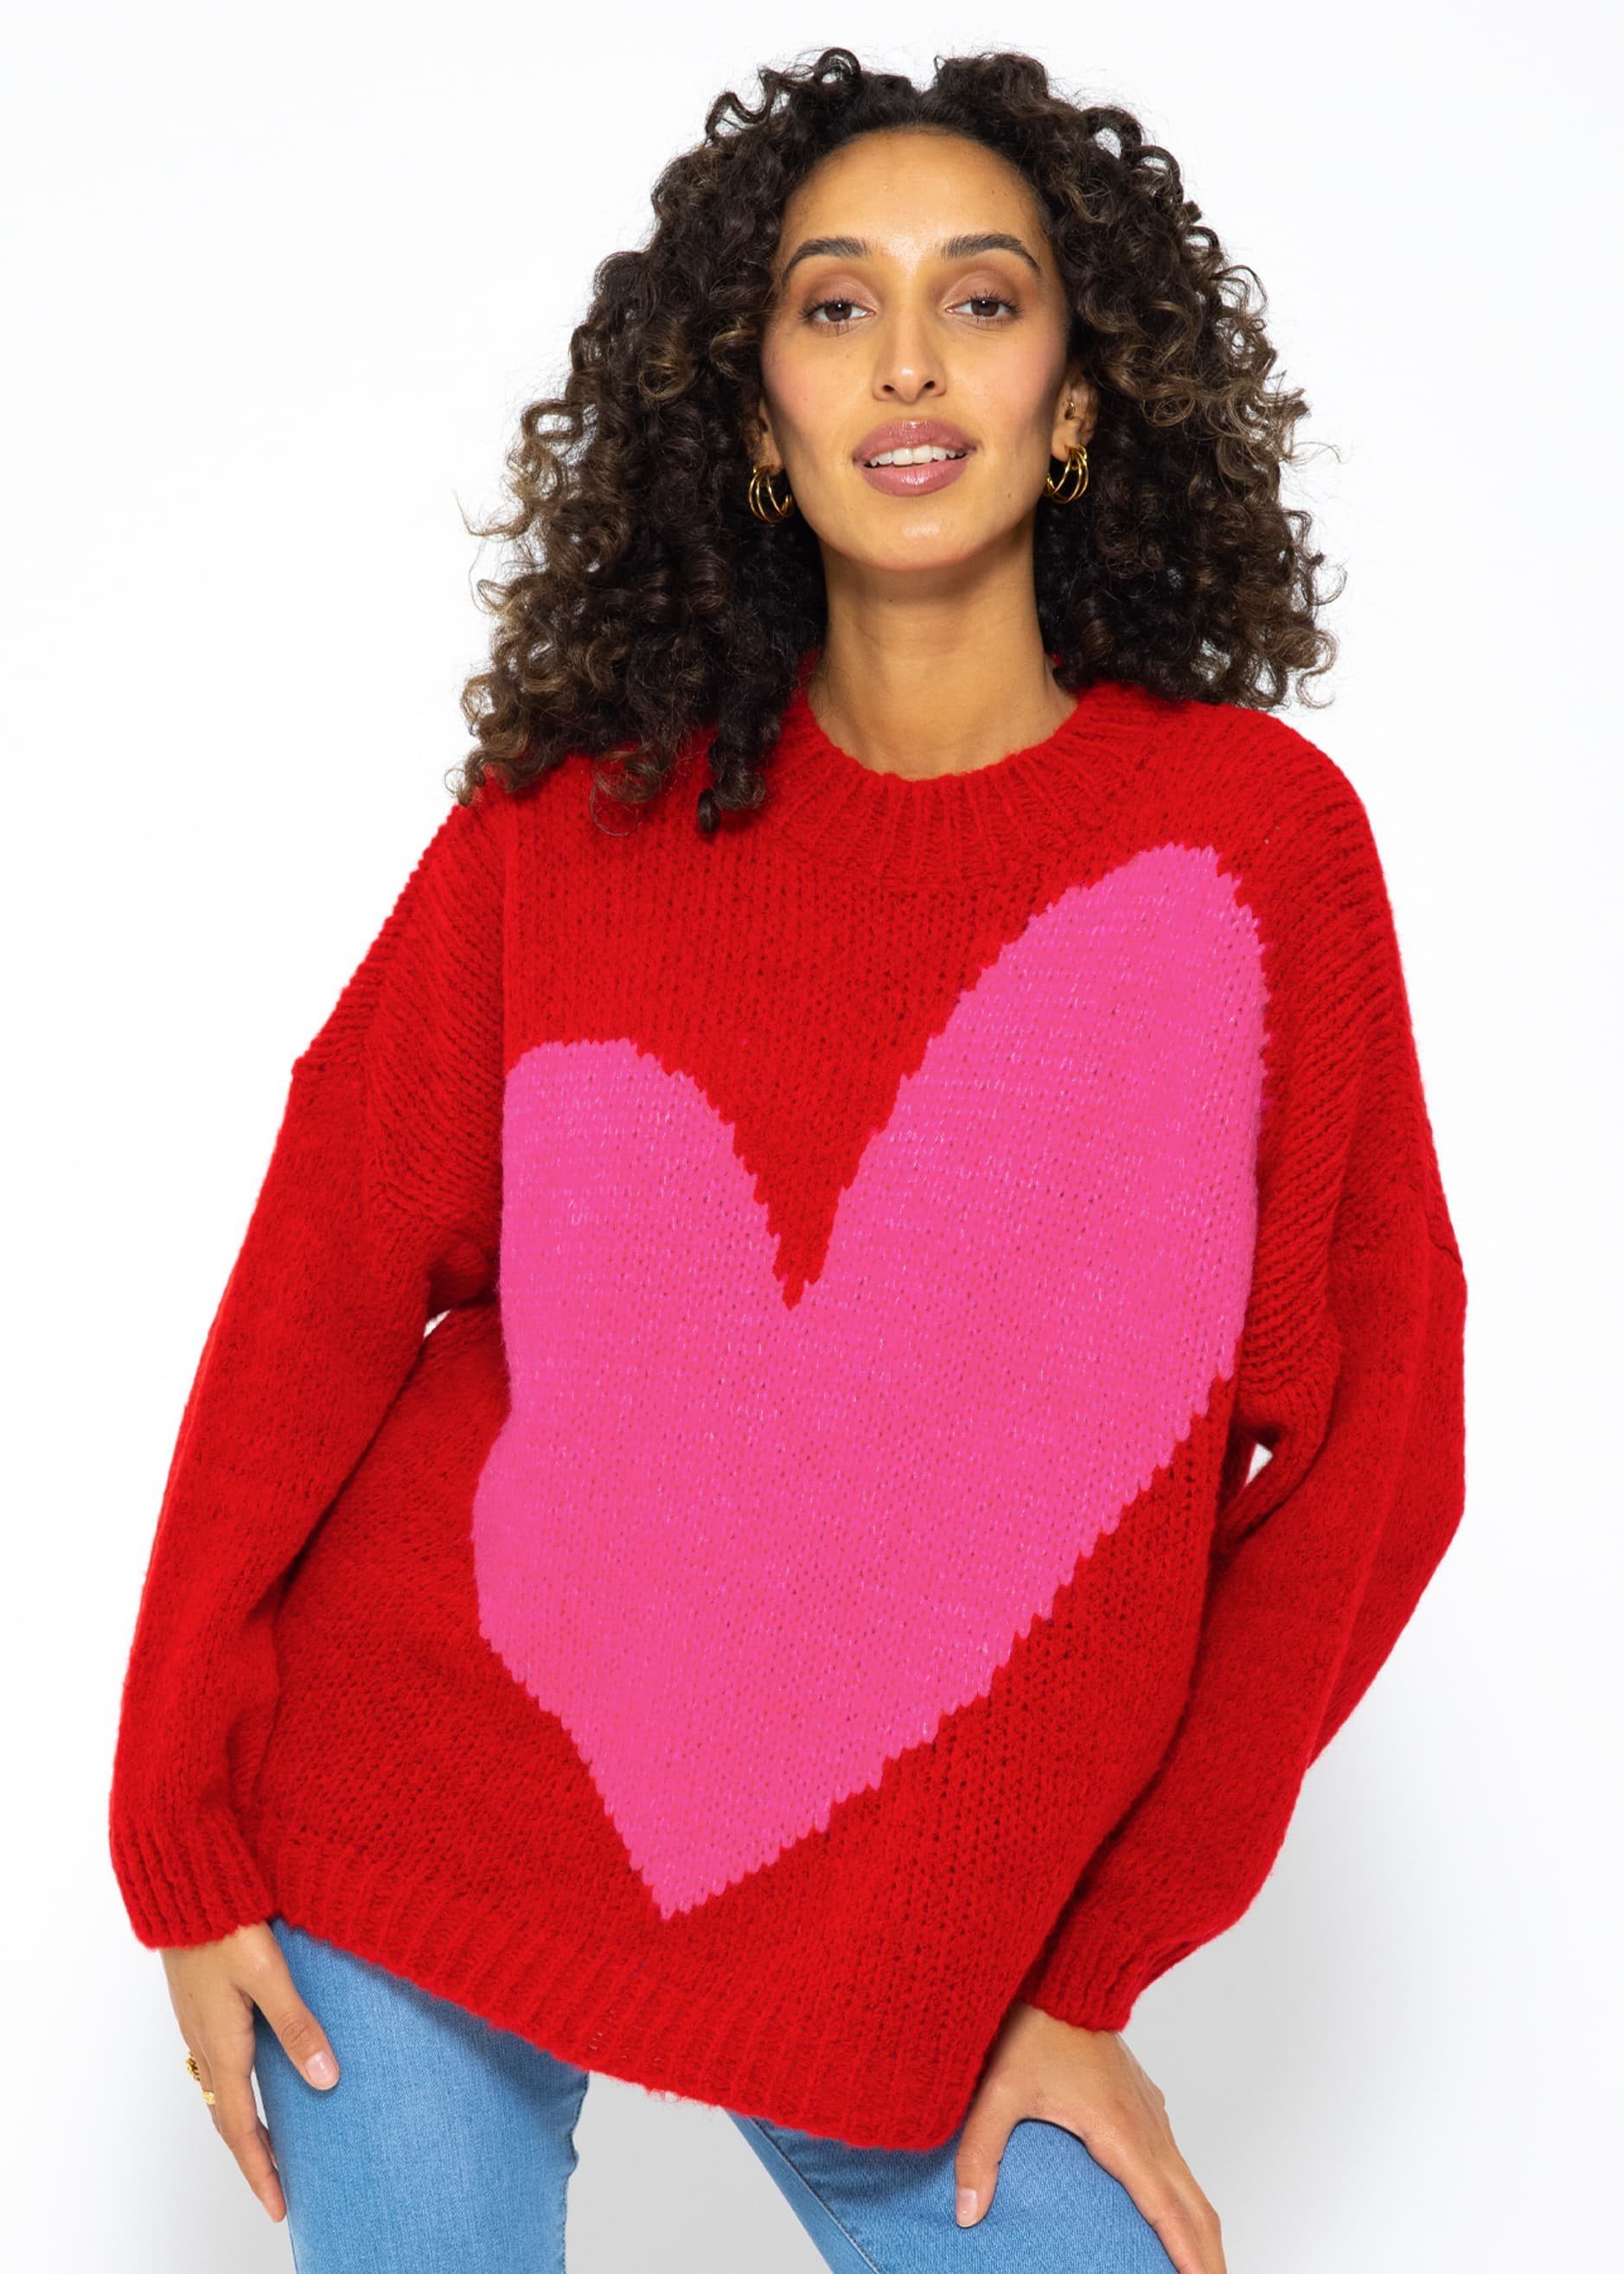 SASSYCLASSY Strickpullover Oversize Пуловеры mit Herzmotiv Flauschigeer Grobstrick-Pullover mit Herzmotiv - made in Italy